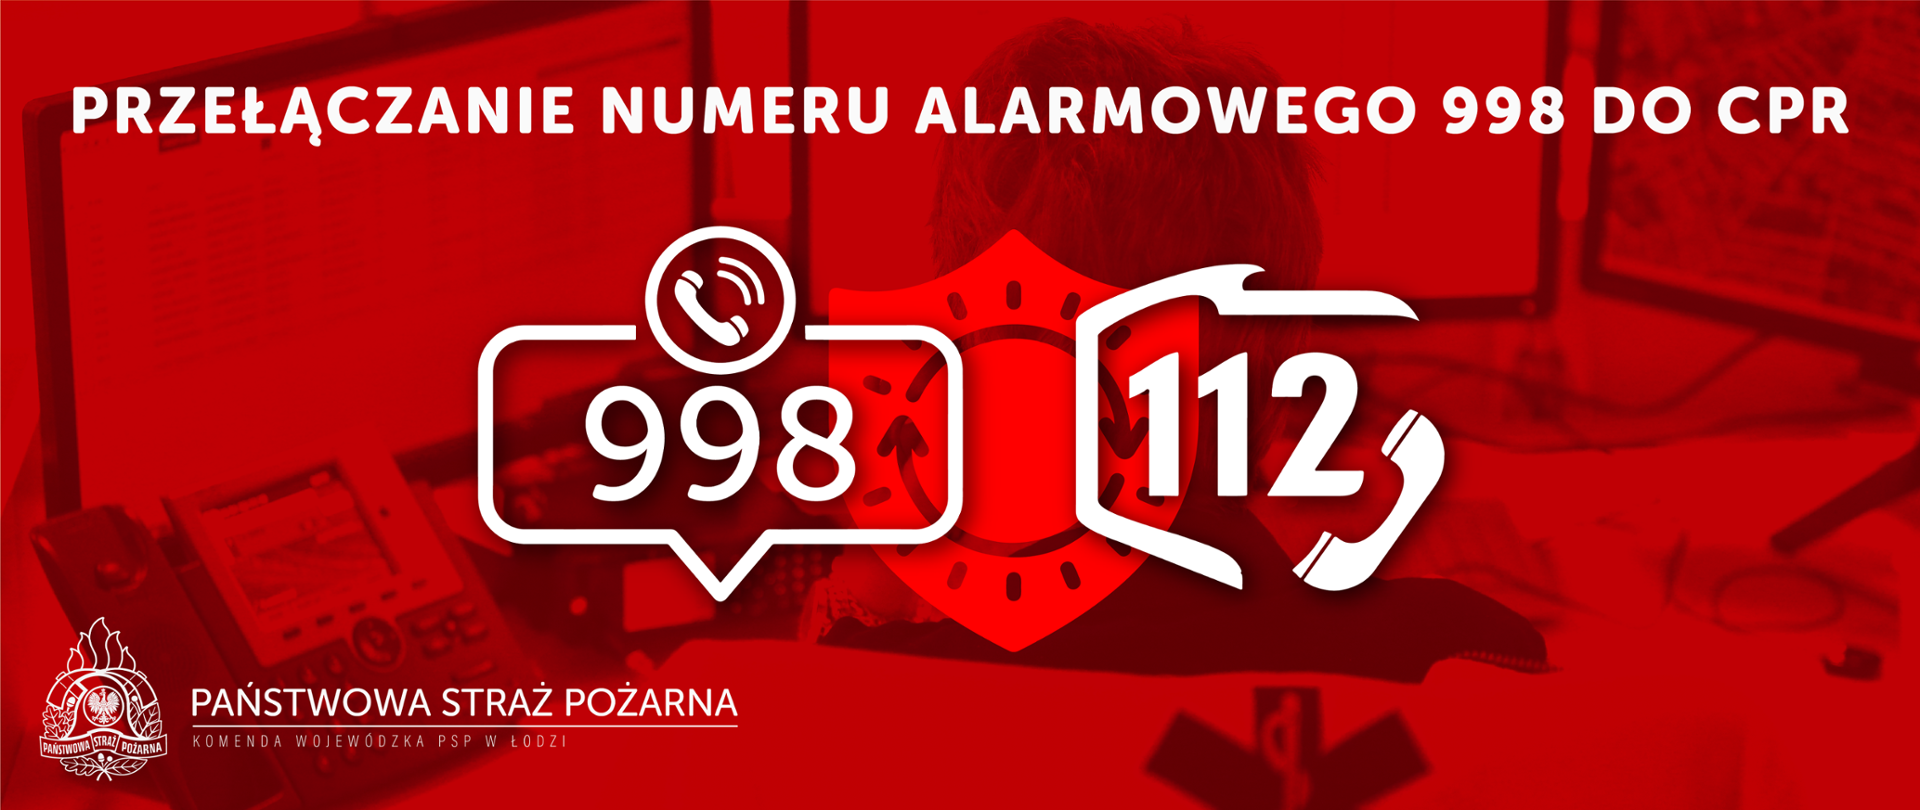 Zdjęcie przedstawia informacje o przełączaniu nr alarmowego 998 do Wojewódzkiego Centrum Powiadamiania Ratunkowego 112